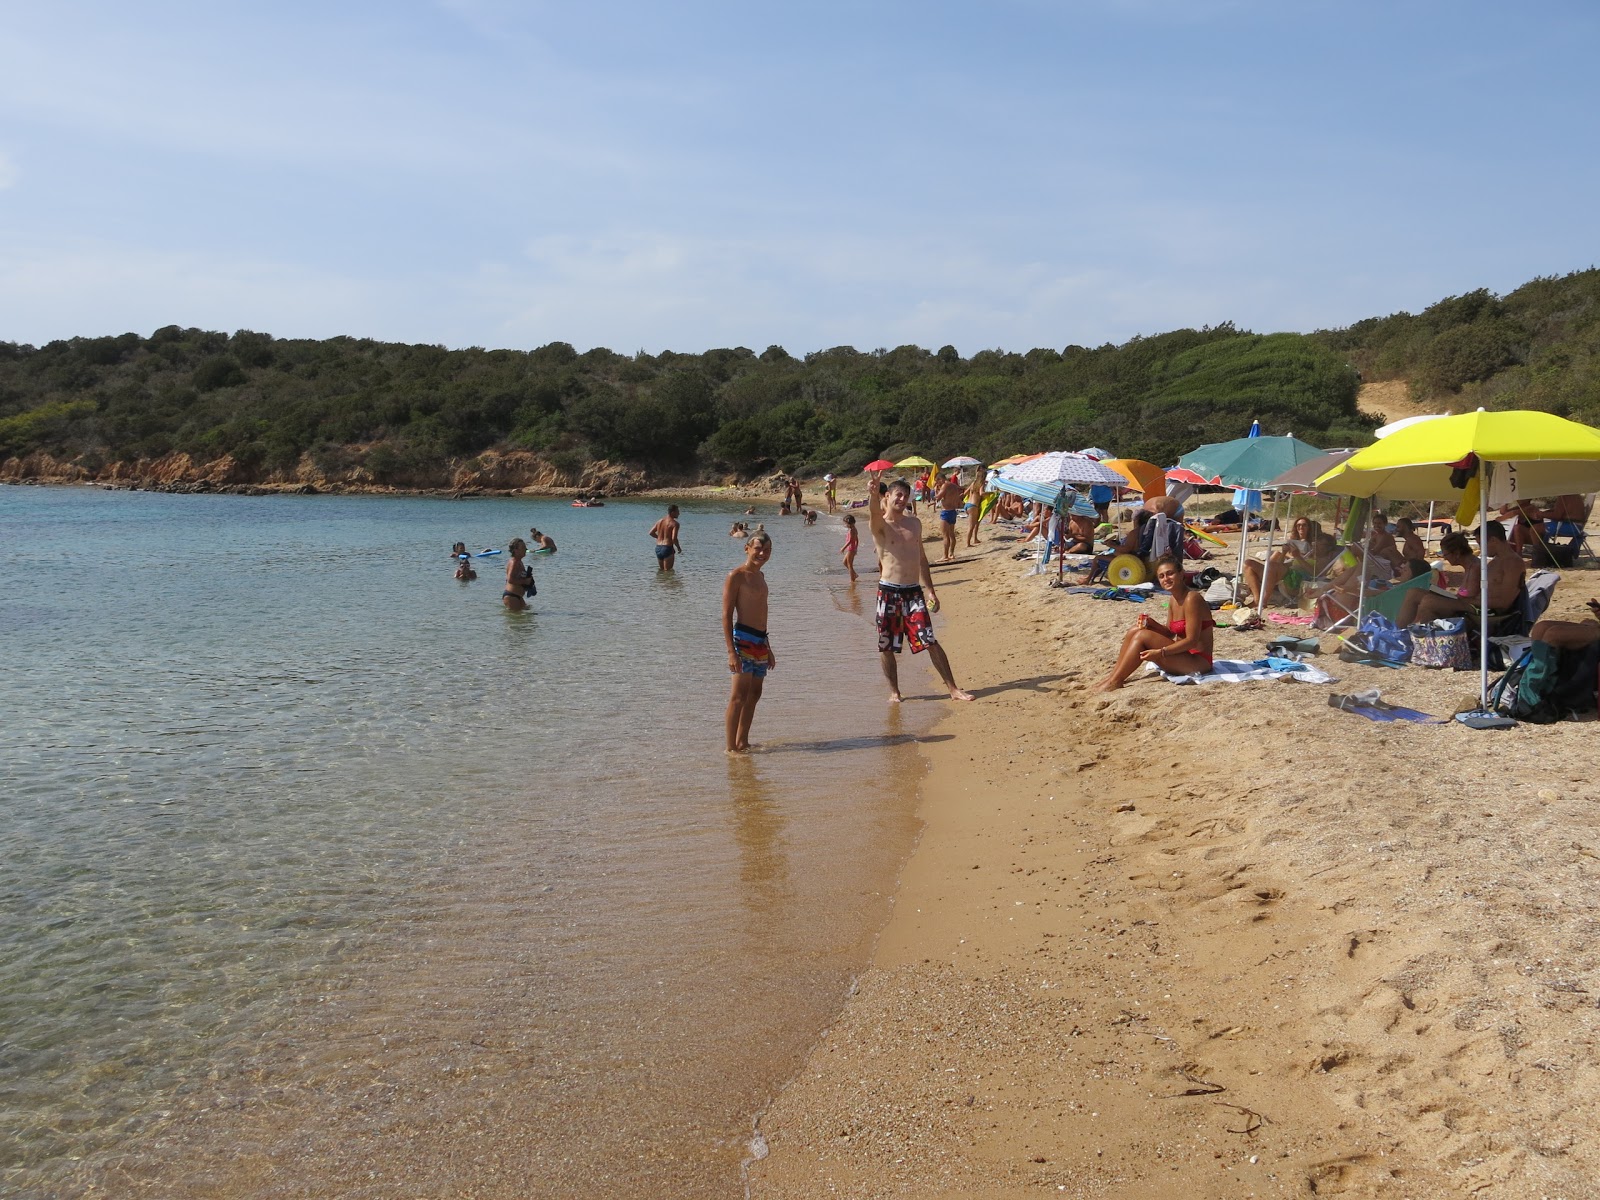 Zdjęcie Porto Palma beach położony w naturalnym obszarze